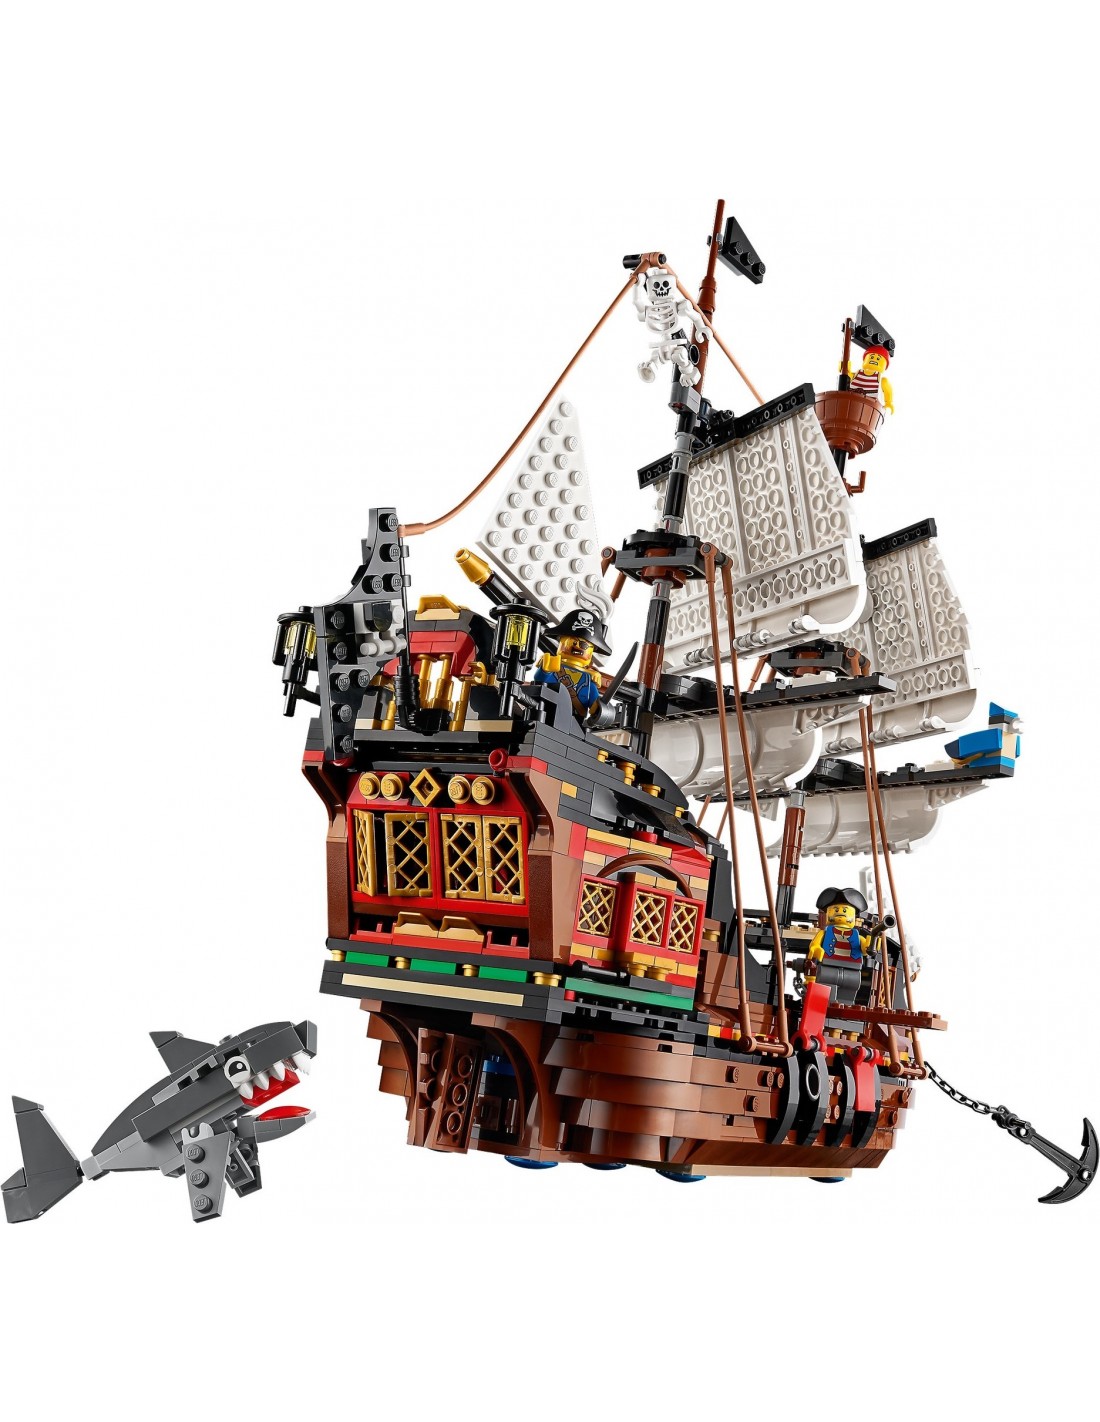 https://www.brickgarden.fr/190739-thickbox_default/lego-creator-le-bateau-pirate-31109.jpg